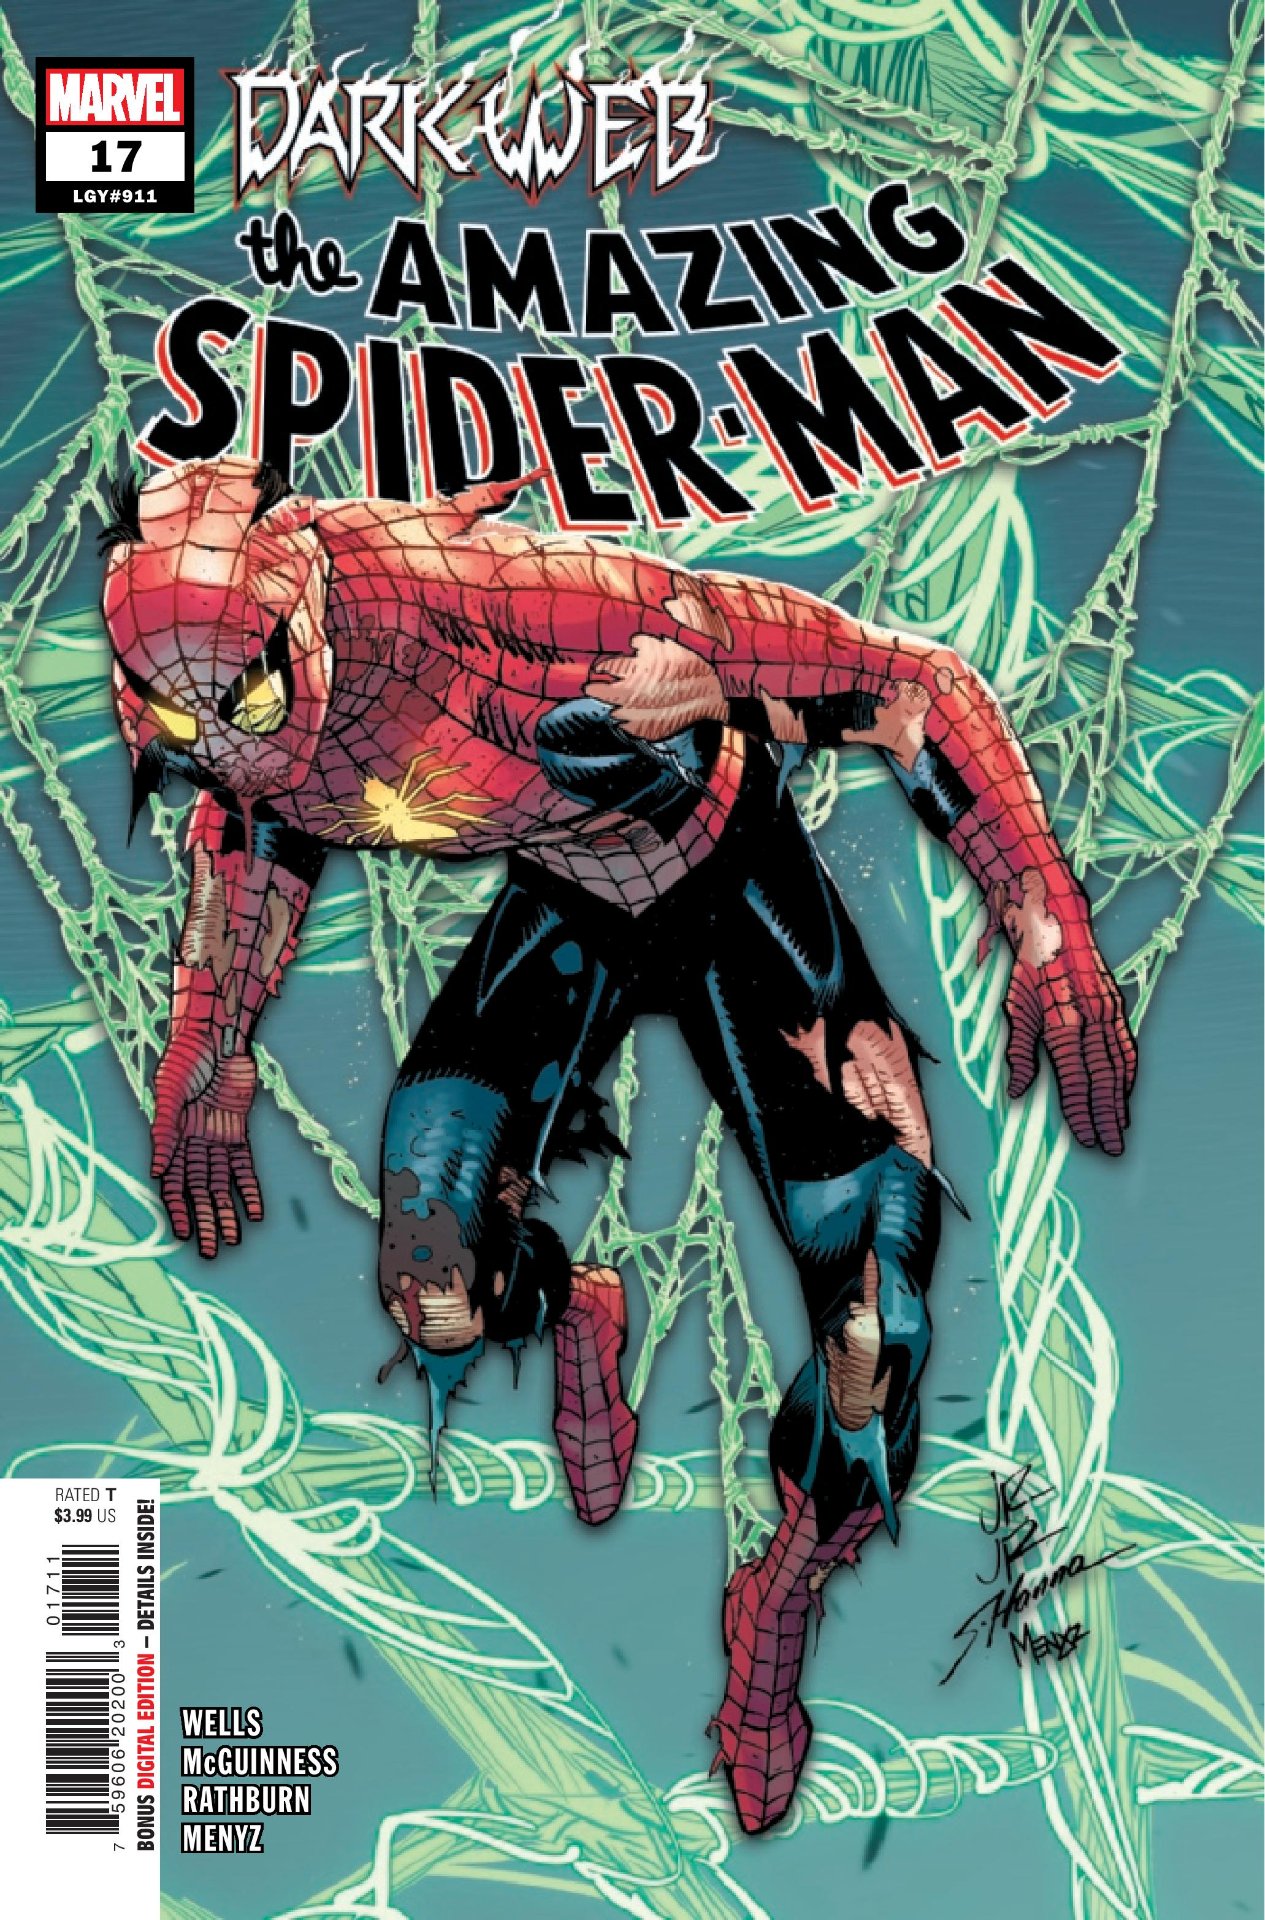 Erstaunliches Spider-Man #17-Cover